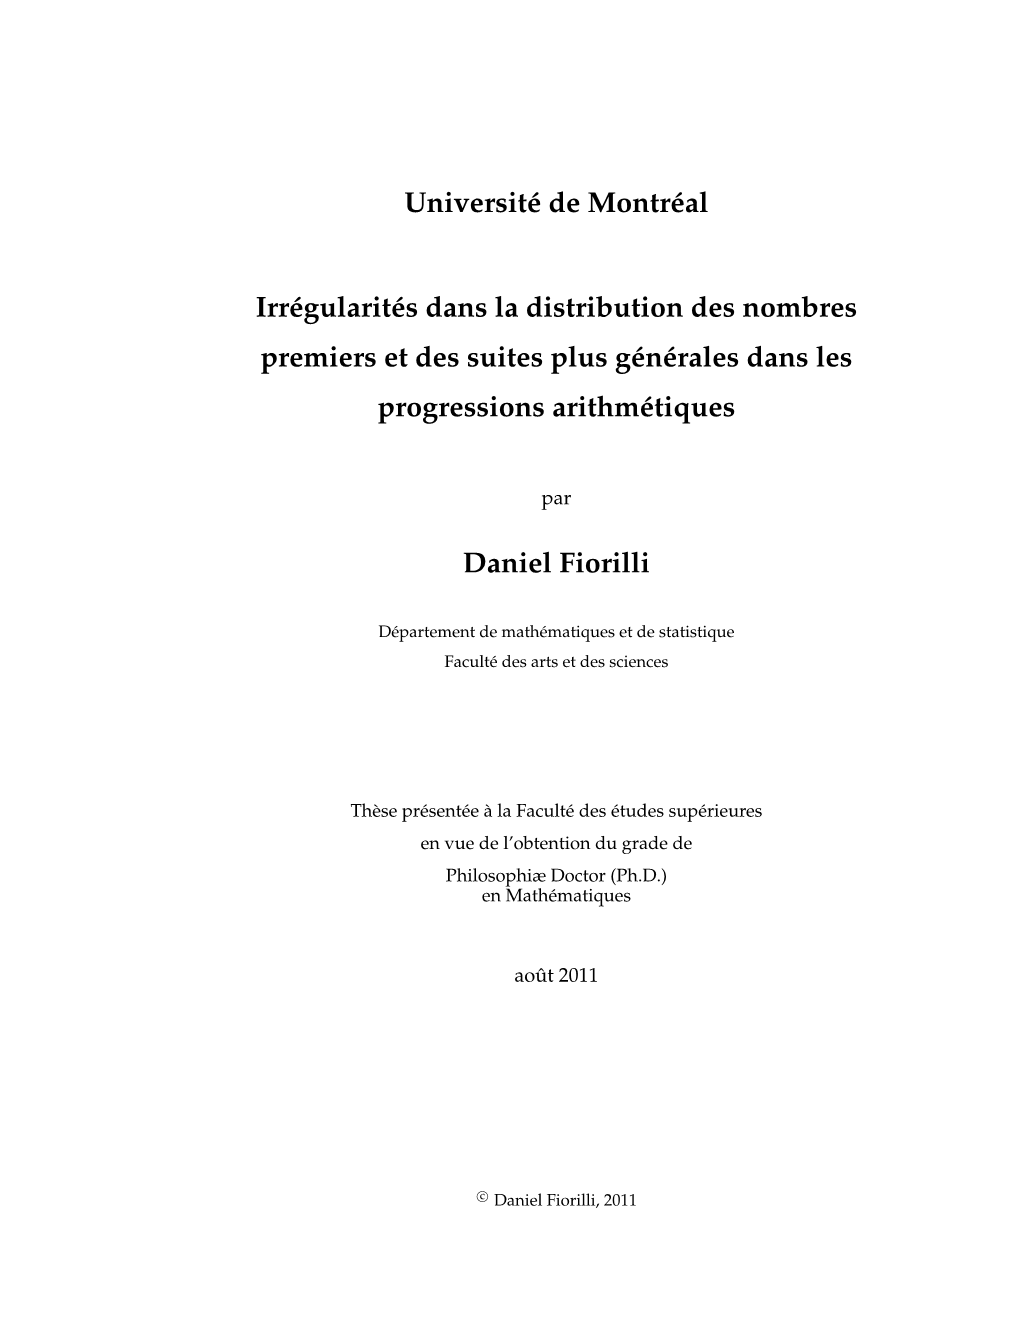 Université De Montréal Irrégularités Dans La Distribution Des Nombres